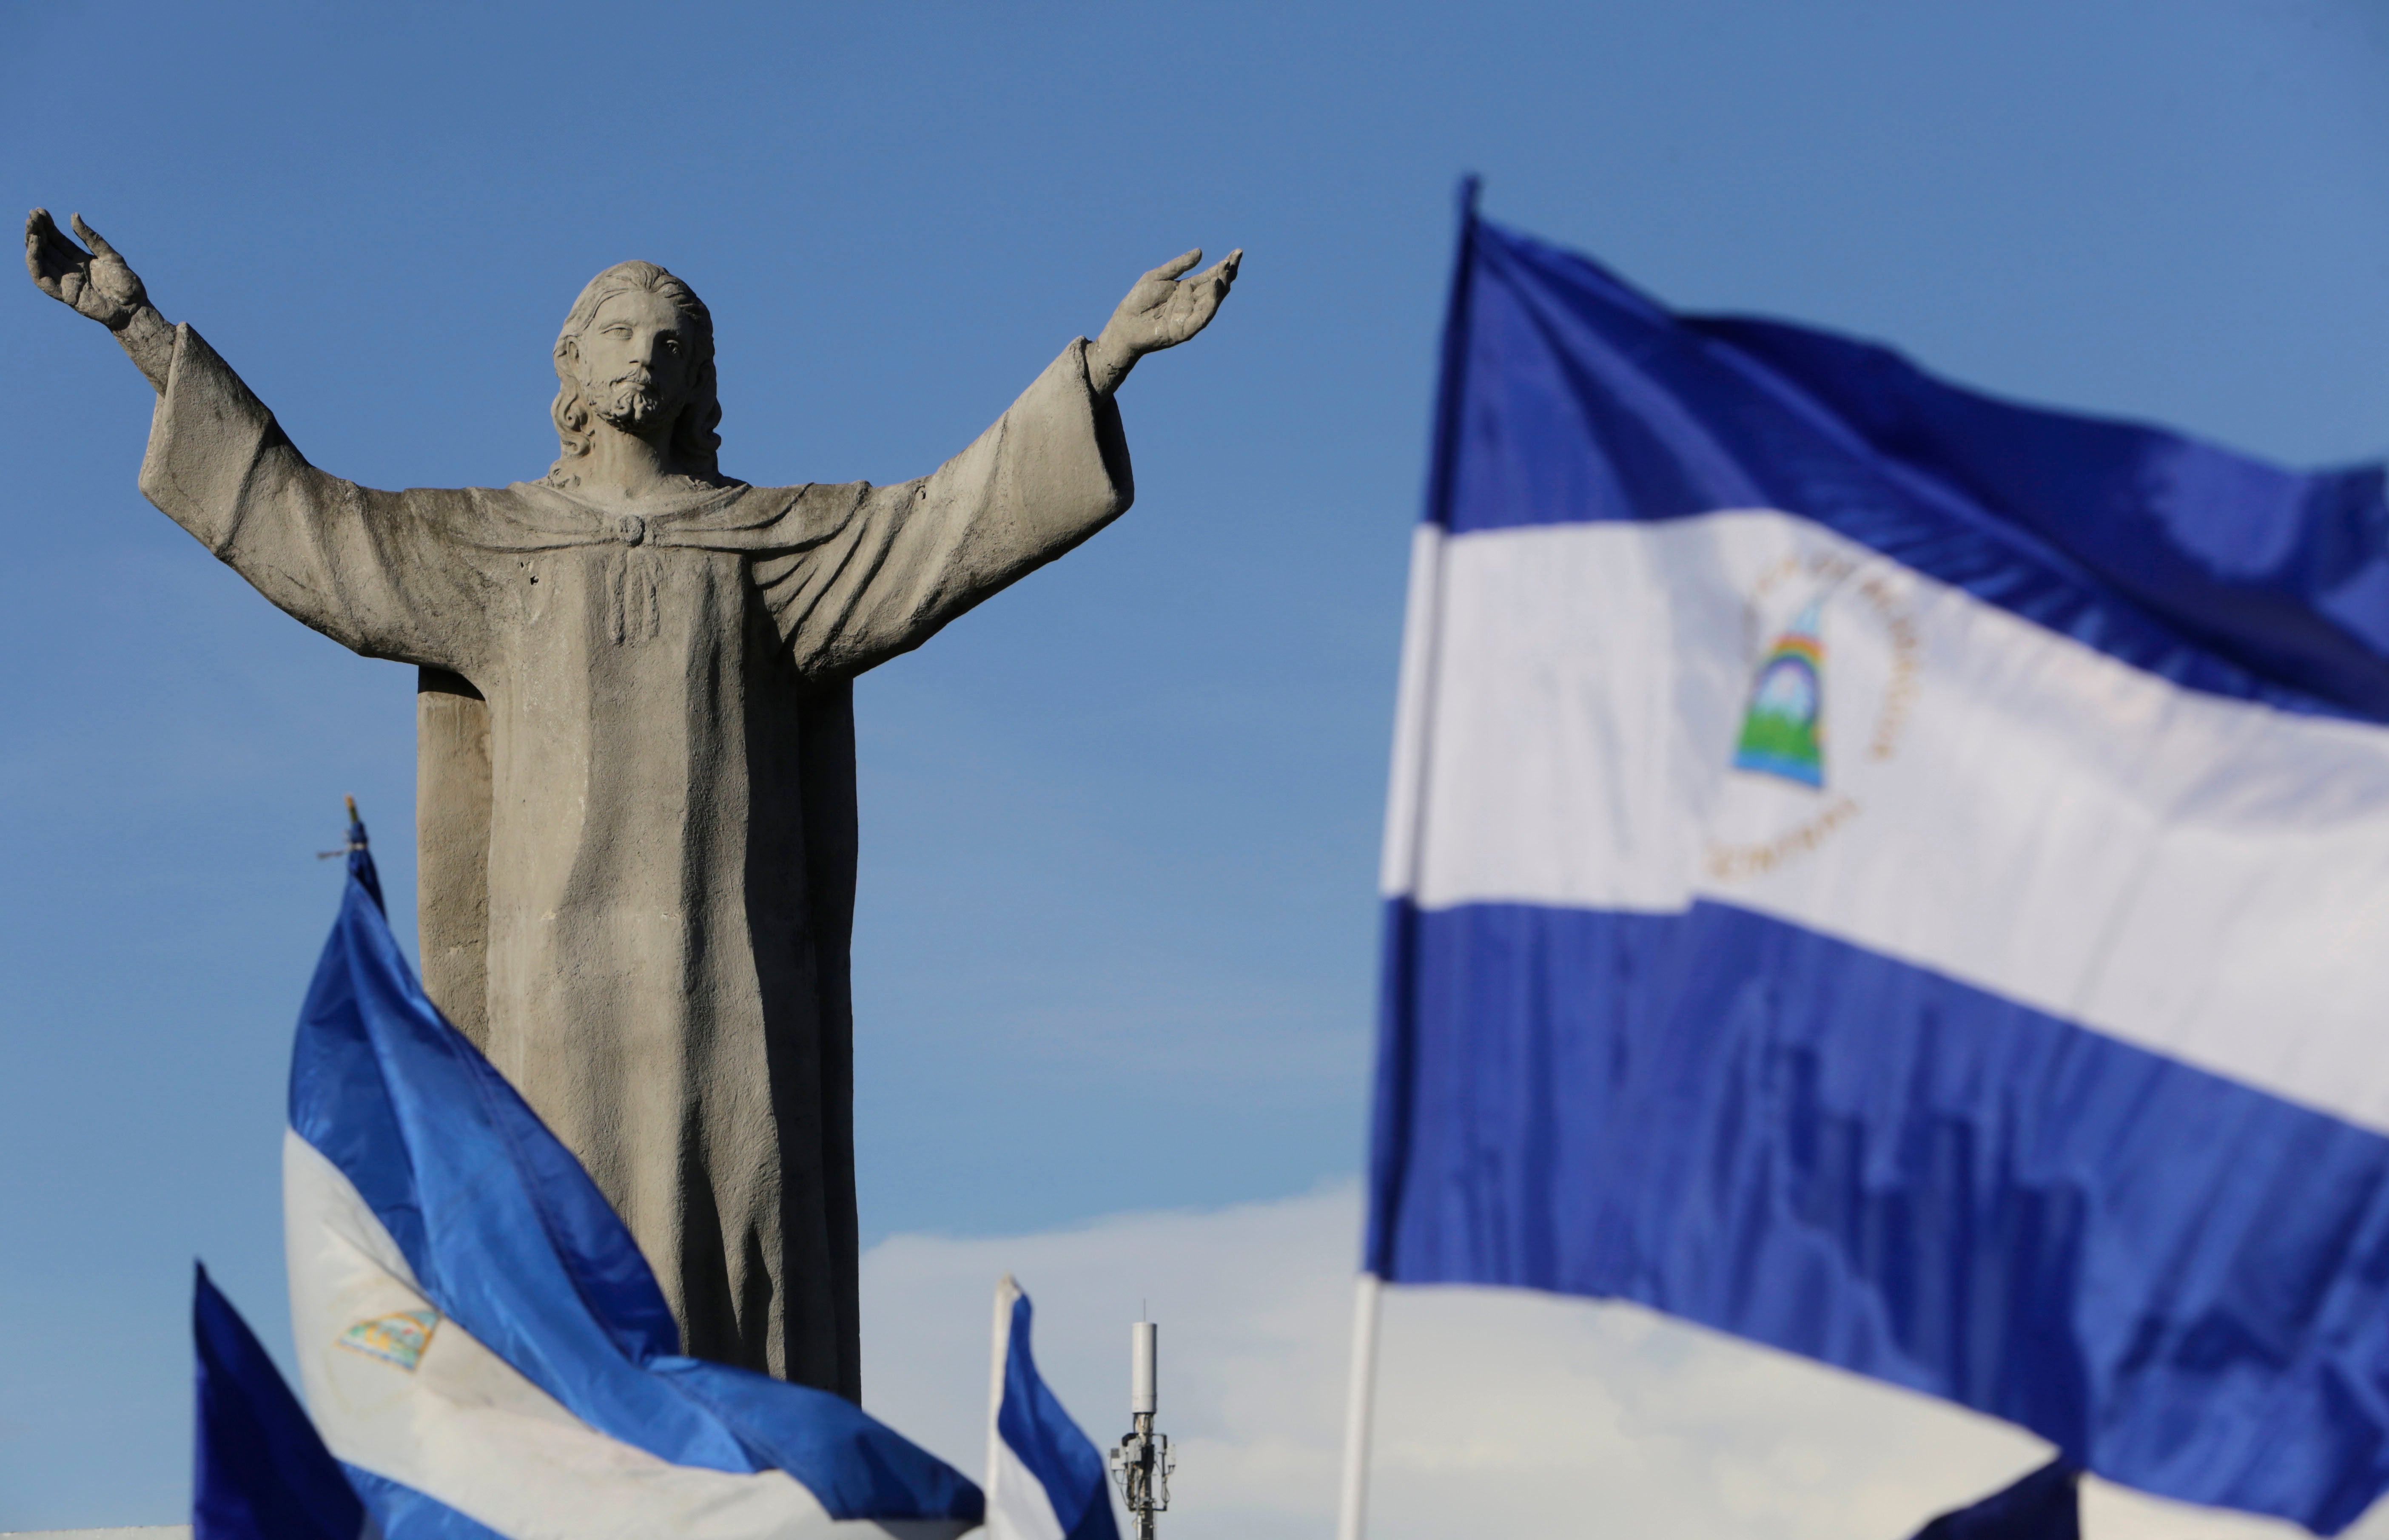 Banderas nacionales nicaragüenses ondean cerca del monumento “Cristo Rey”, en Managua.